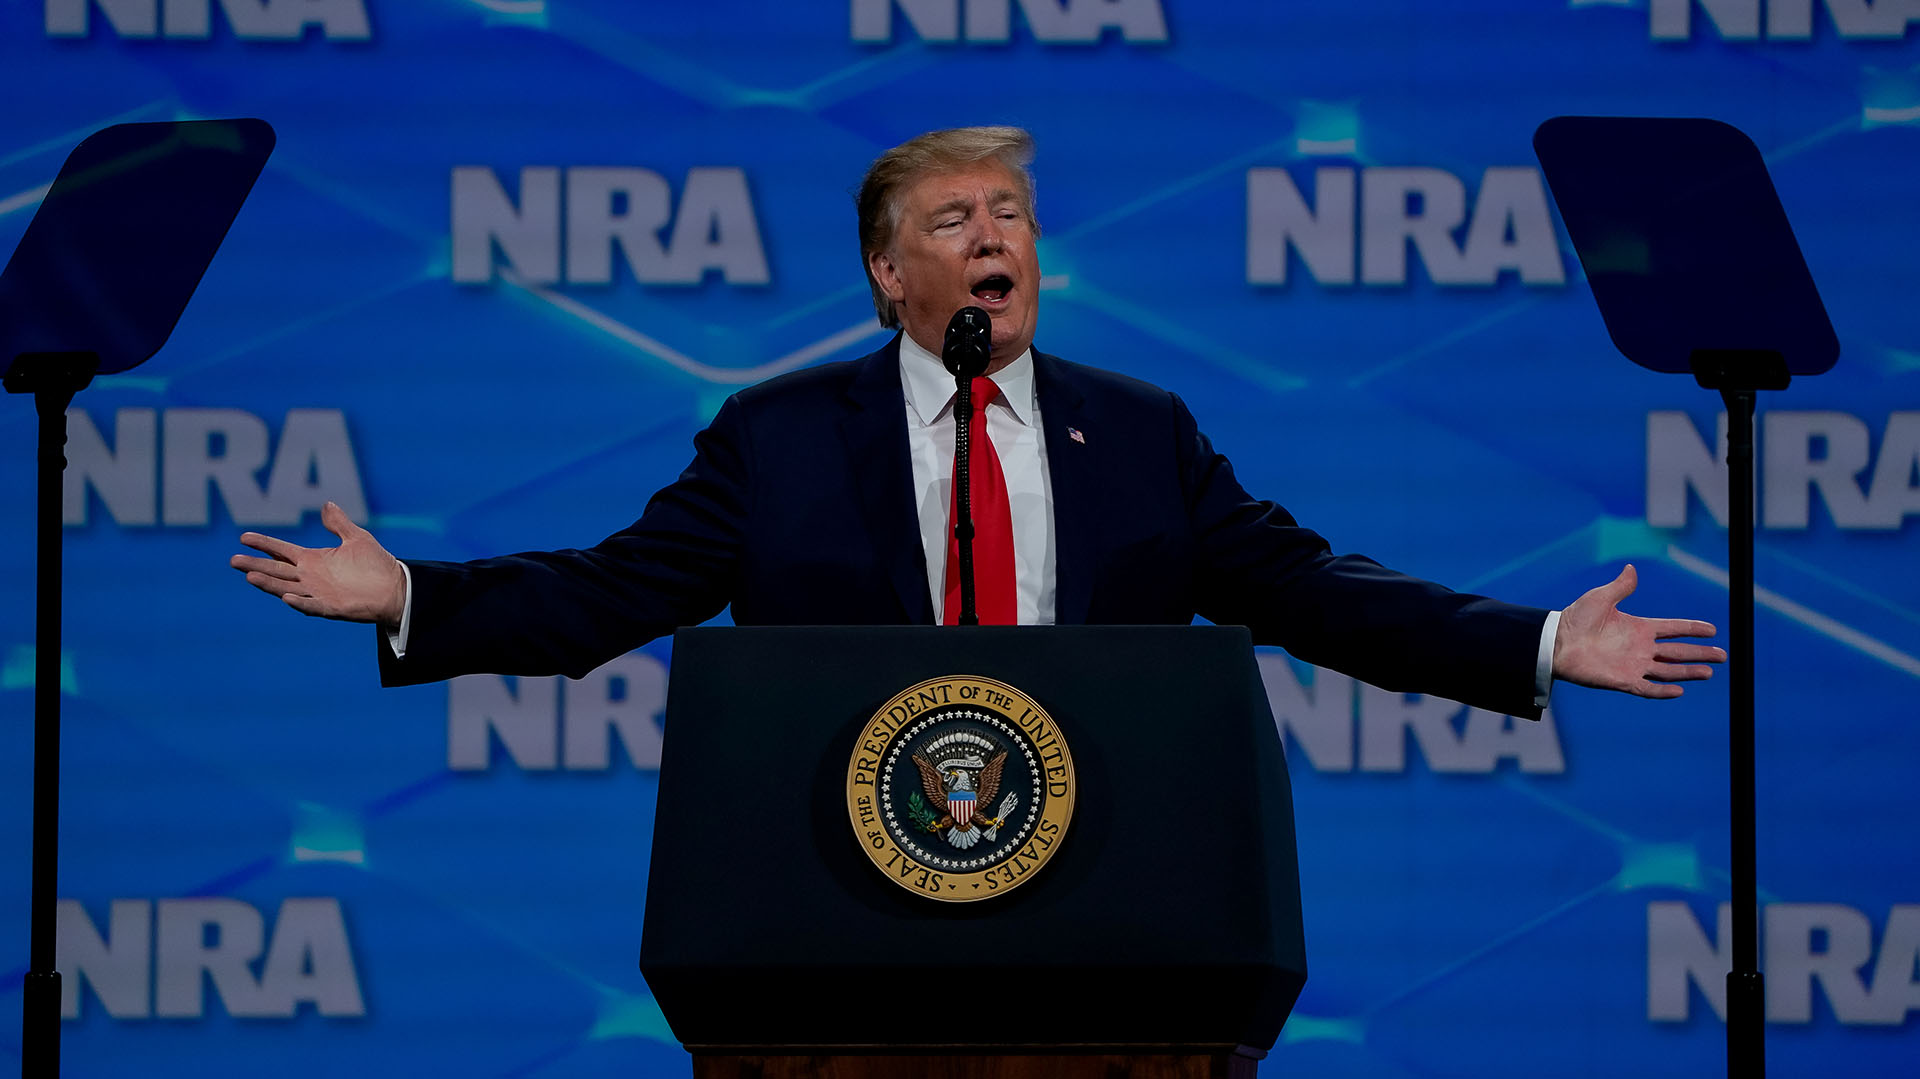 Dateifoto: Der ehemalige US-Präsident Donald Trump am 26. April 2019 in Indianapolis, Indiana, USA.  (REUTERS / Bryan Woolston) spricht auf der Jahreskonferenz der National Rifle Association (NRA).